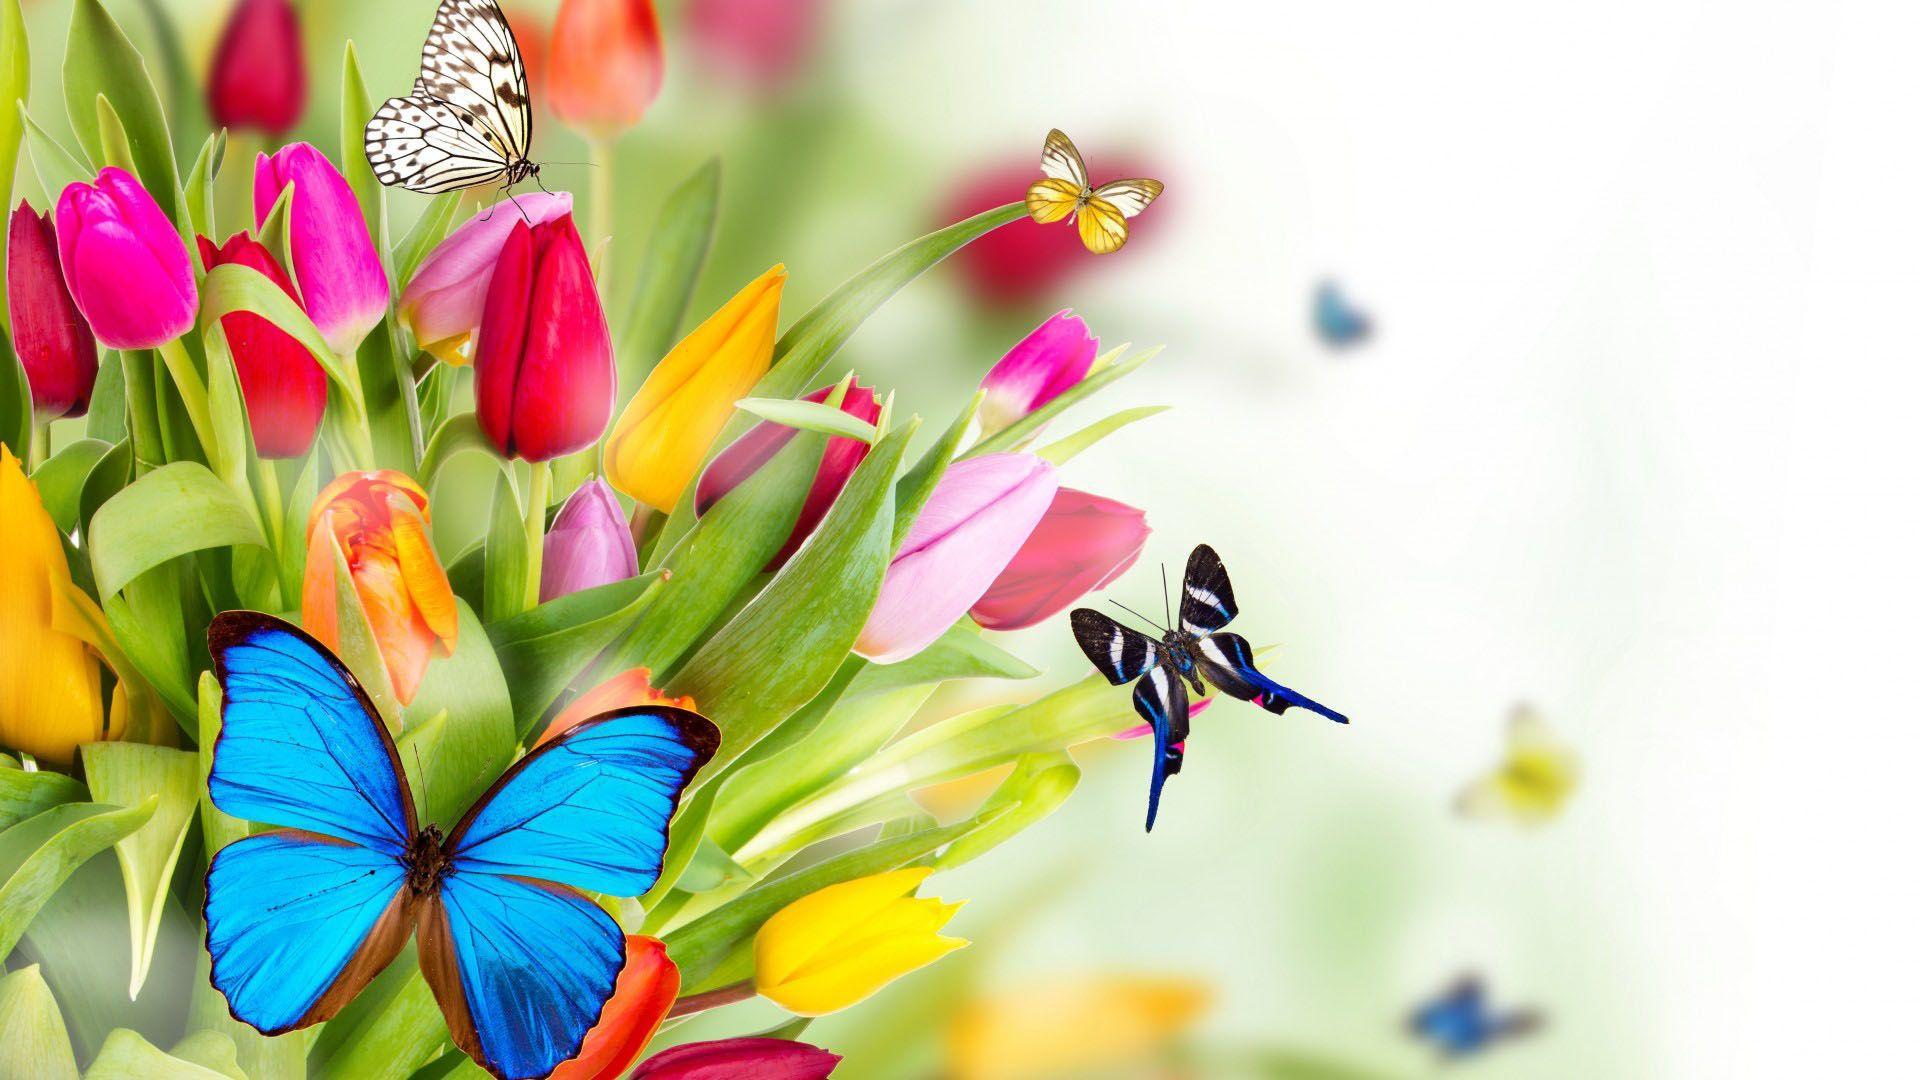 Beautiful Butterflies On Flowers HD 16 9